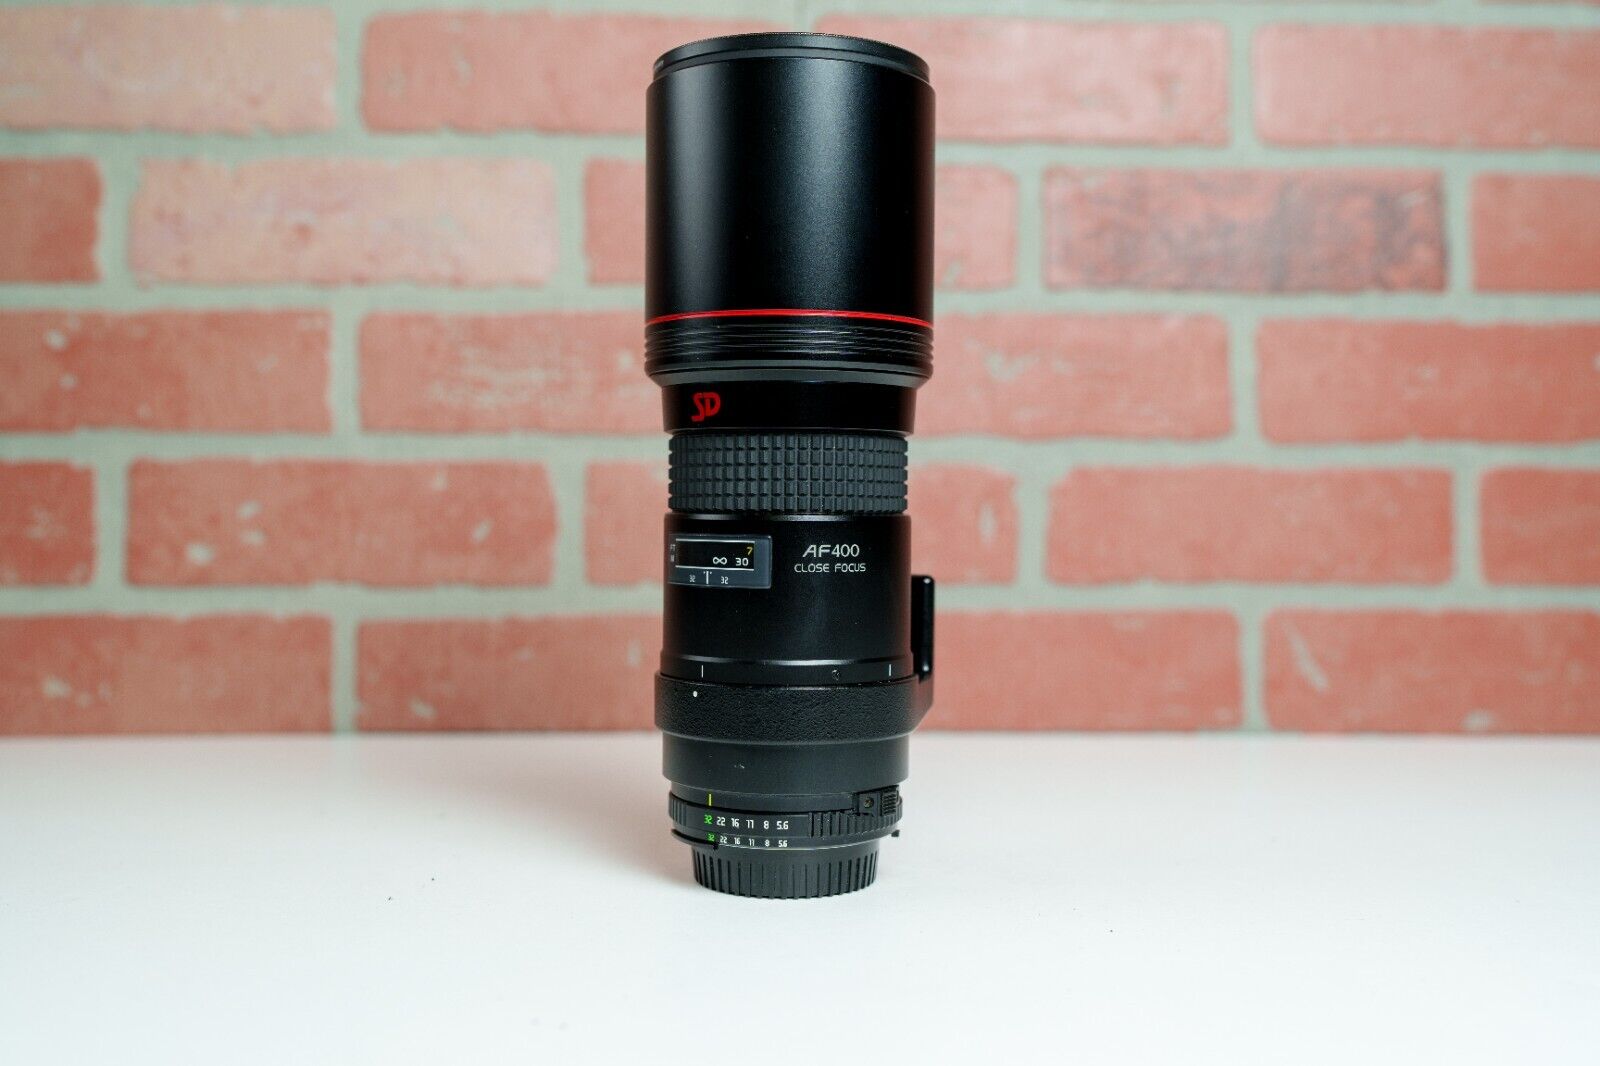 Tokina AT-X AF 400mm f5.6 Close Focus Lens for Nikon - Tested